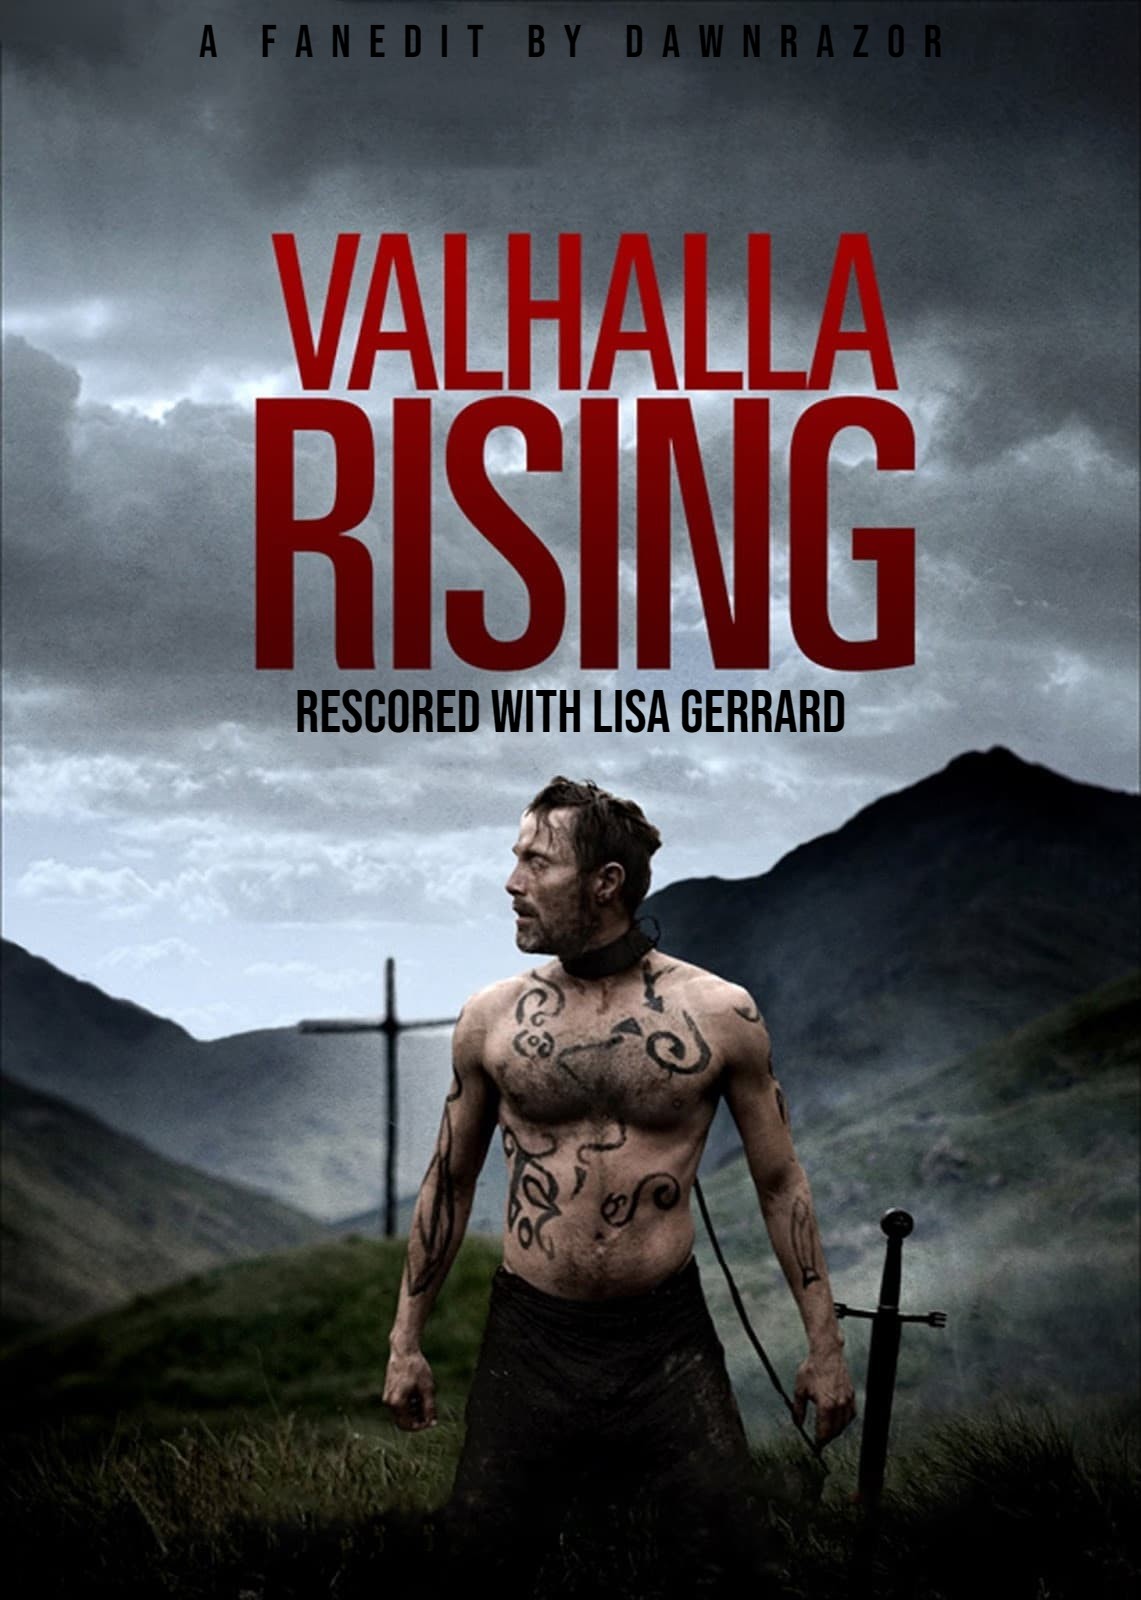 valhalla rising poster ART1.jpg